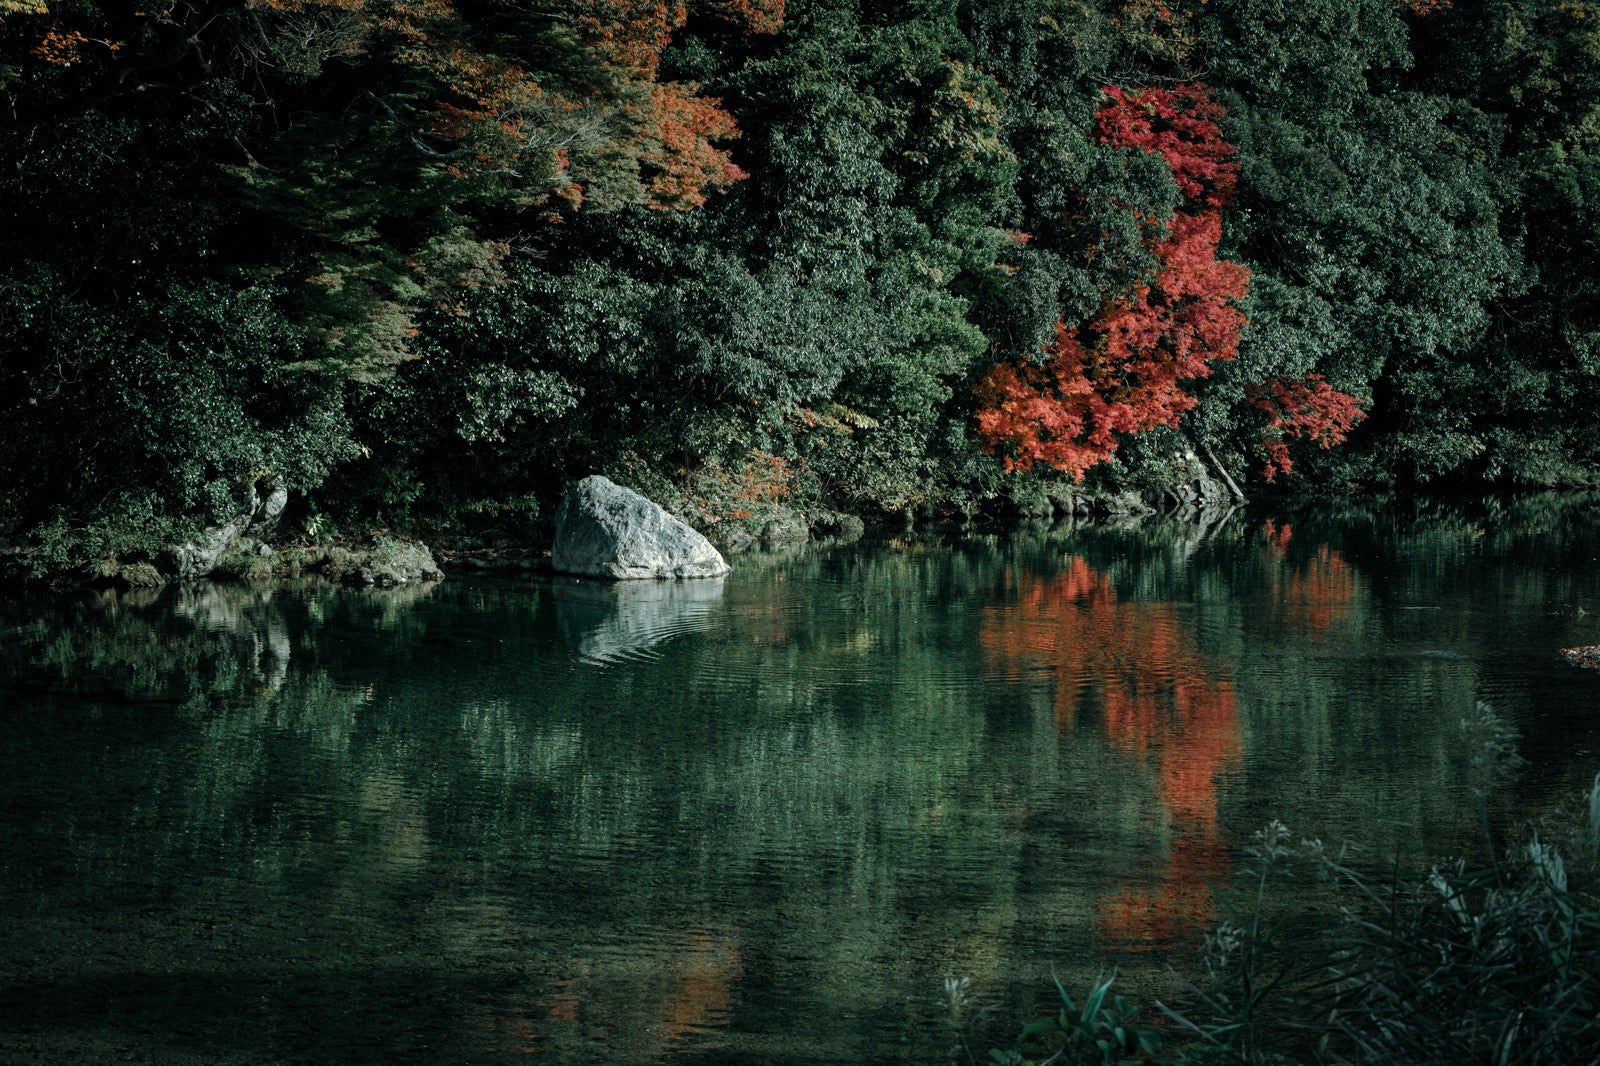 「水面に映り込む紅葉した木々と波紋」の写真